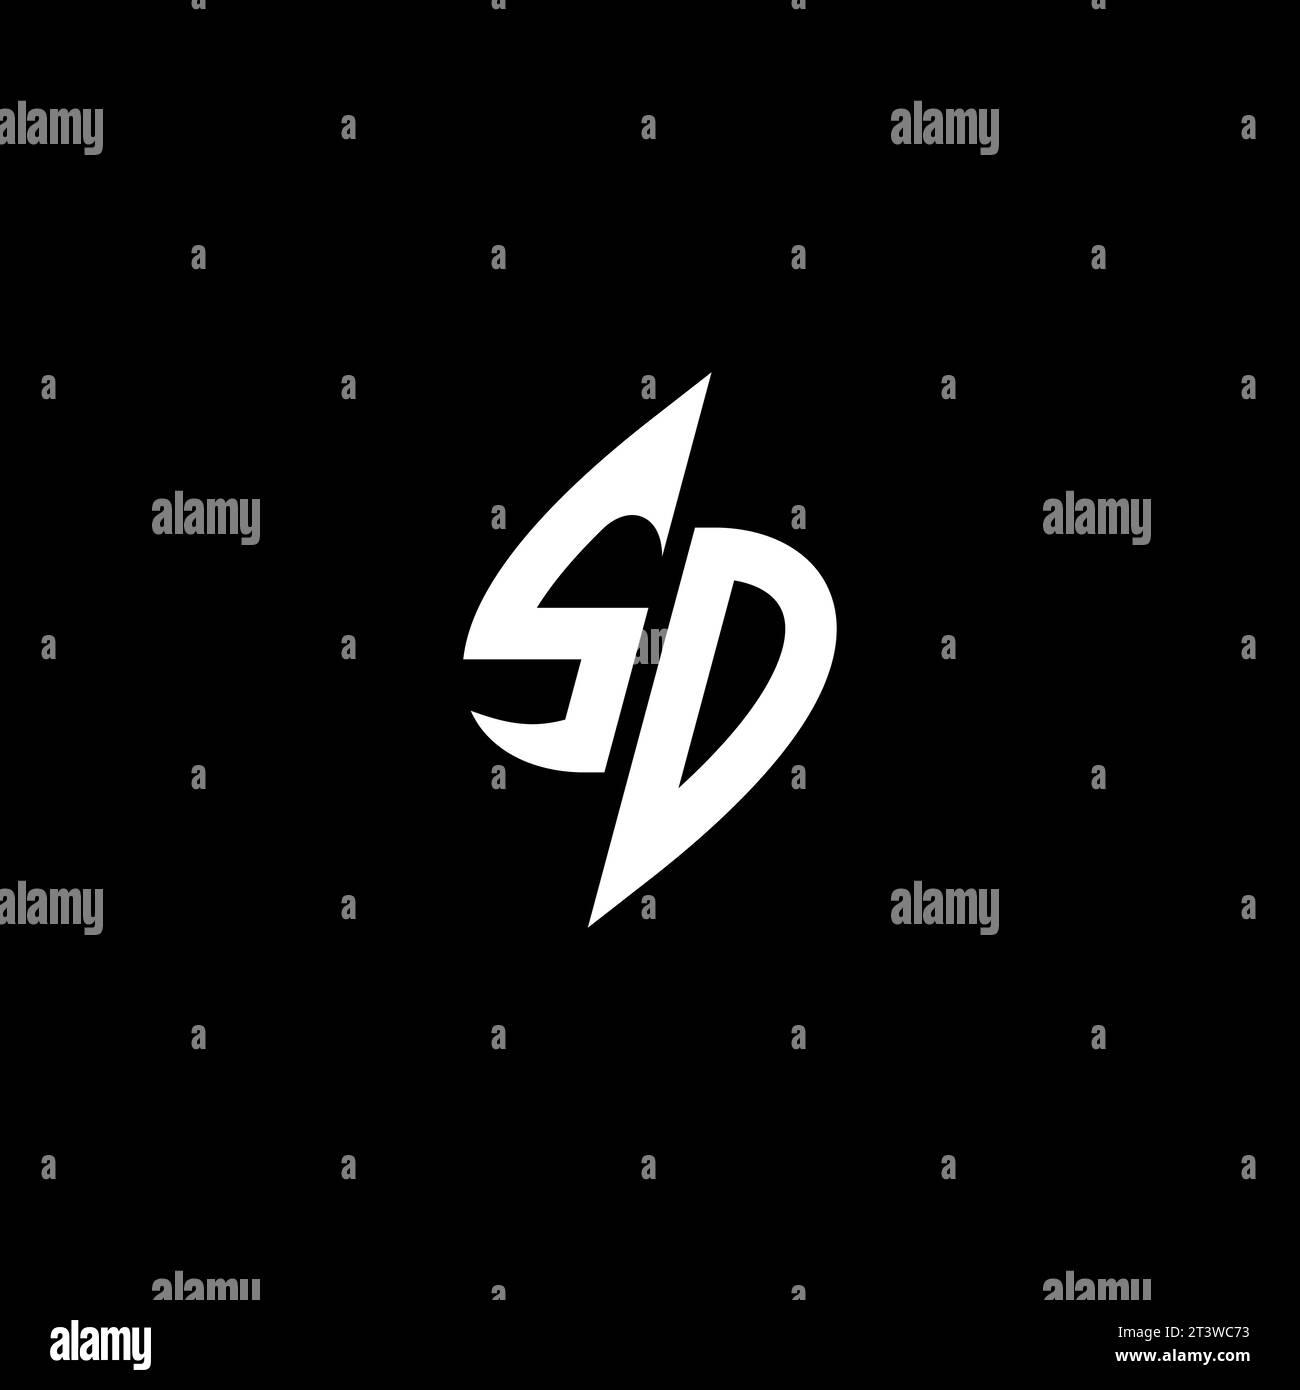 SD monogram esport logo design with cool shape concept in vector Stock Vector